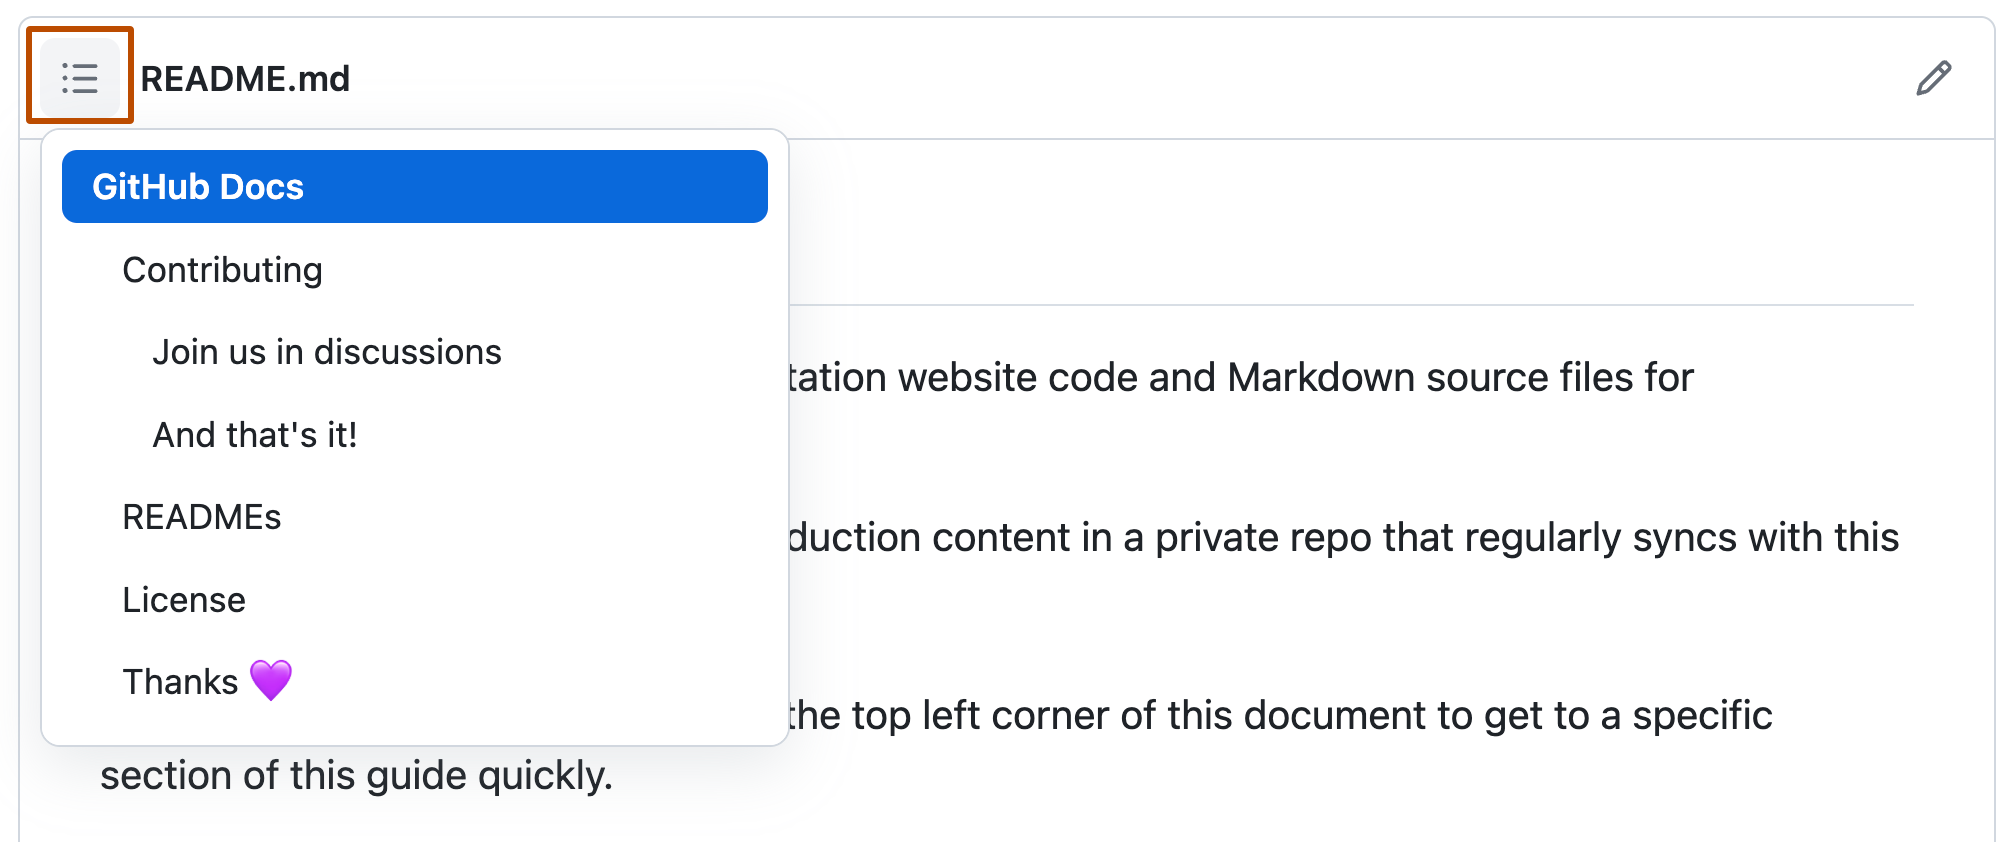 노출되는 목차의 드롭다운 메뉴가 있는 GitHub Docs 오픈 소스 리포지토리에 있는 추가 정보 파일의 스크린샷 목차 아이콘은 진한 주황색 윤곽선으로 표시됩니다.